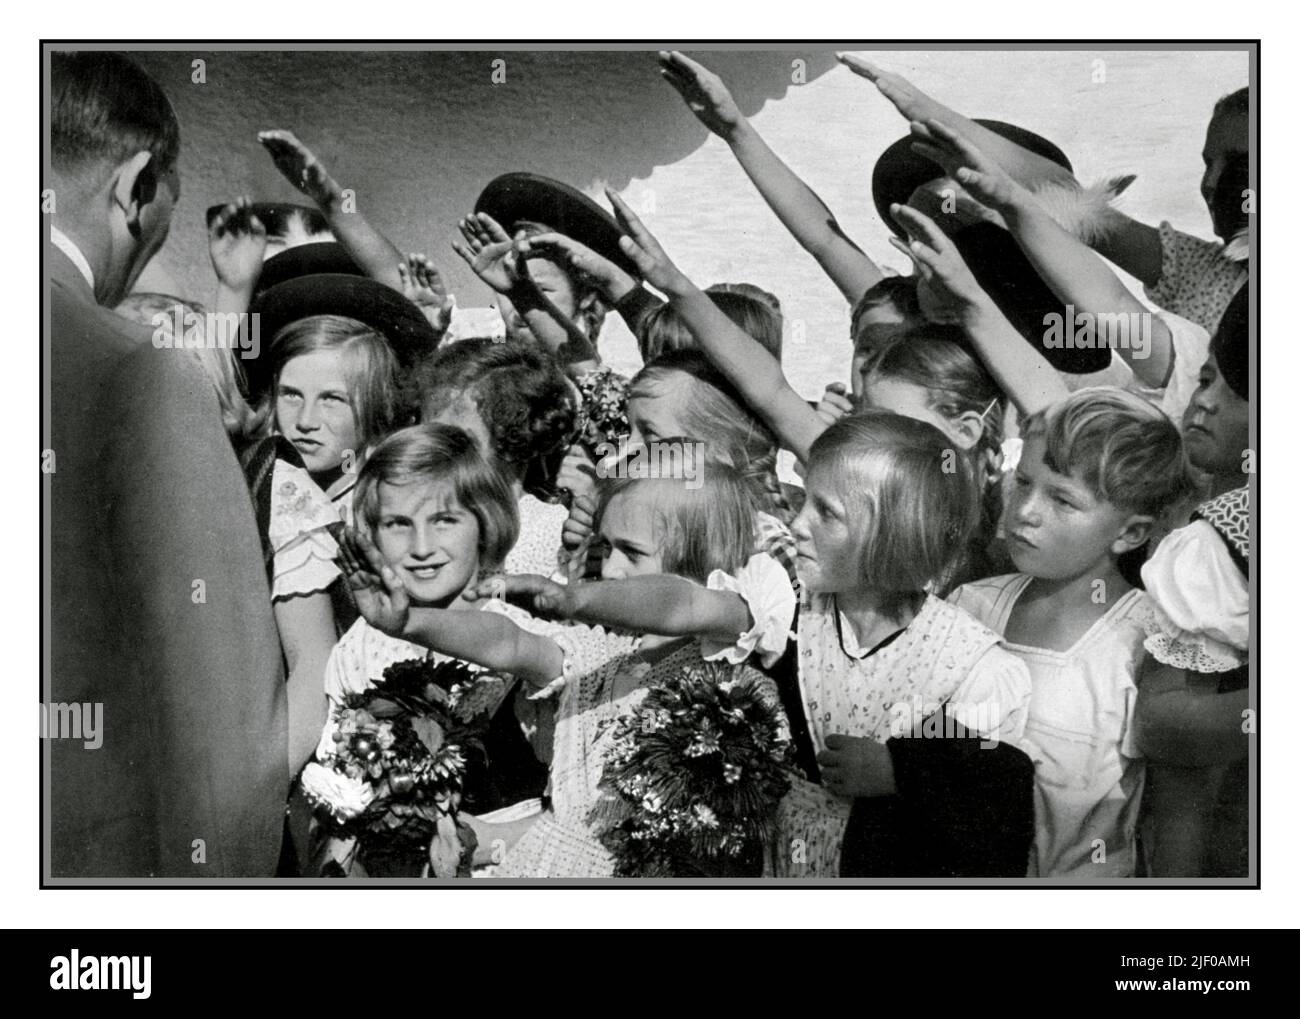 Adolf Hitler 1930s con un gruppo di ragazze e ragazzi allegri e bionde aryan bambini con fiori, che sorridono e lo salutano con il saluto nazista Heil Hitler. Germania nazista 1936 Foto Stock